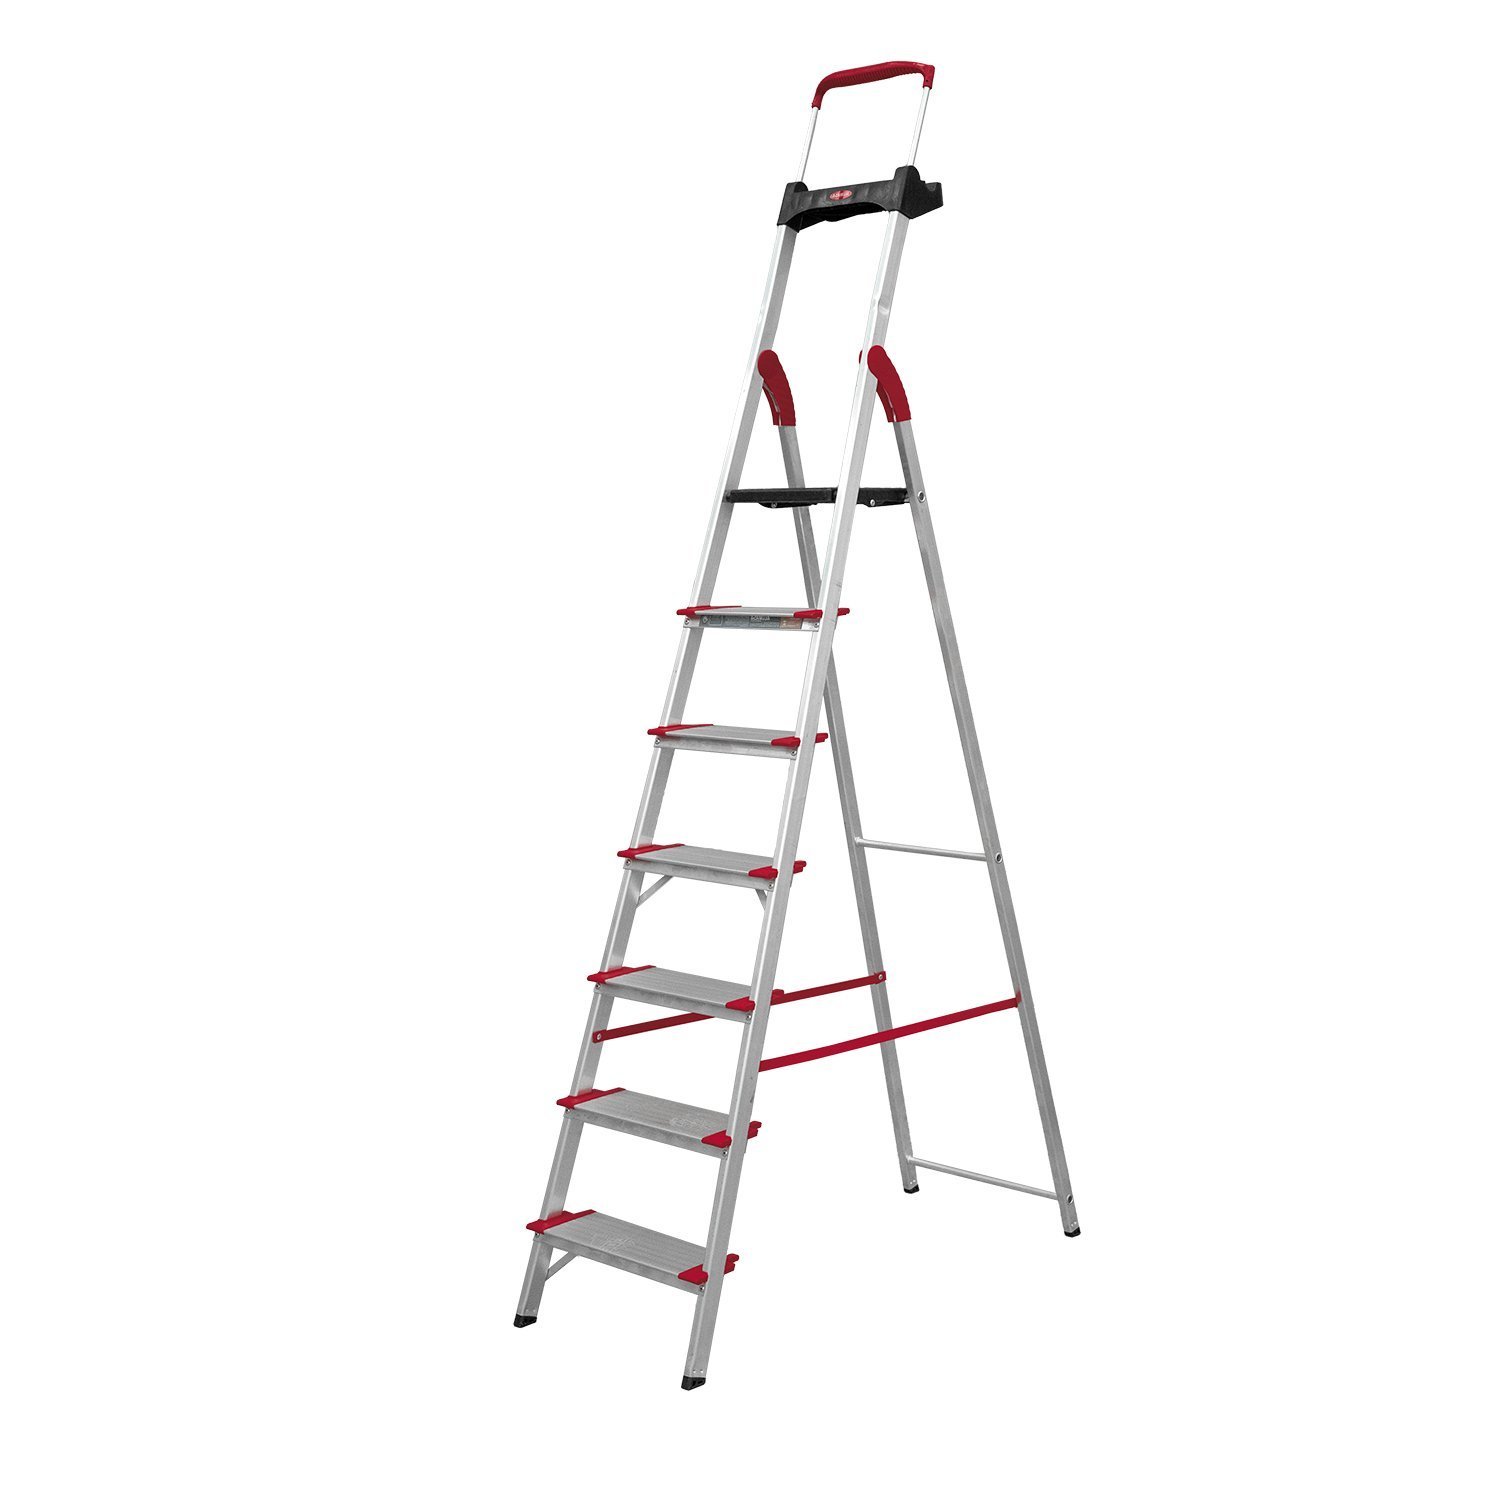 Escada Dobravel 7 Degraus Confort em Aluminio Alumasa - 4